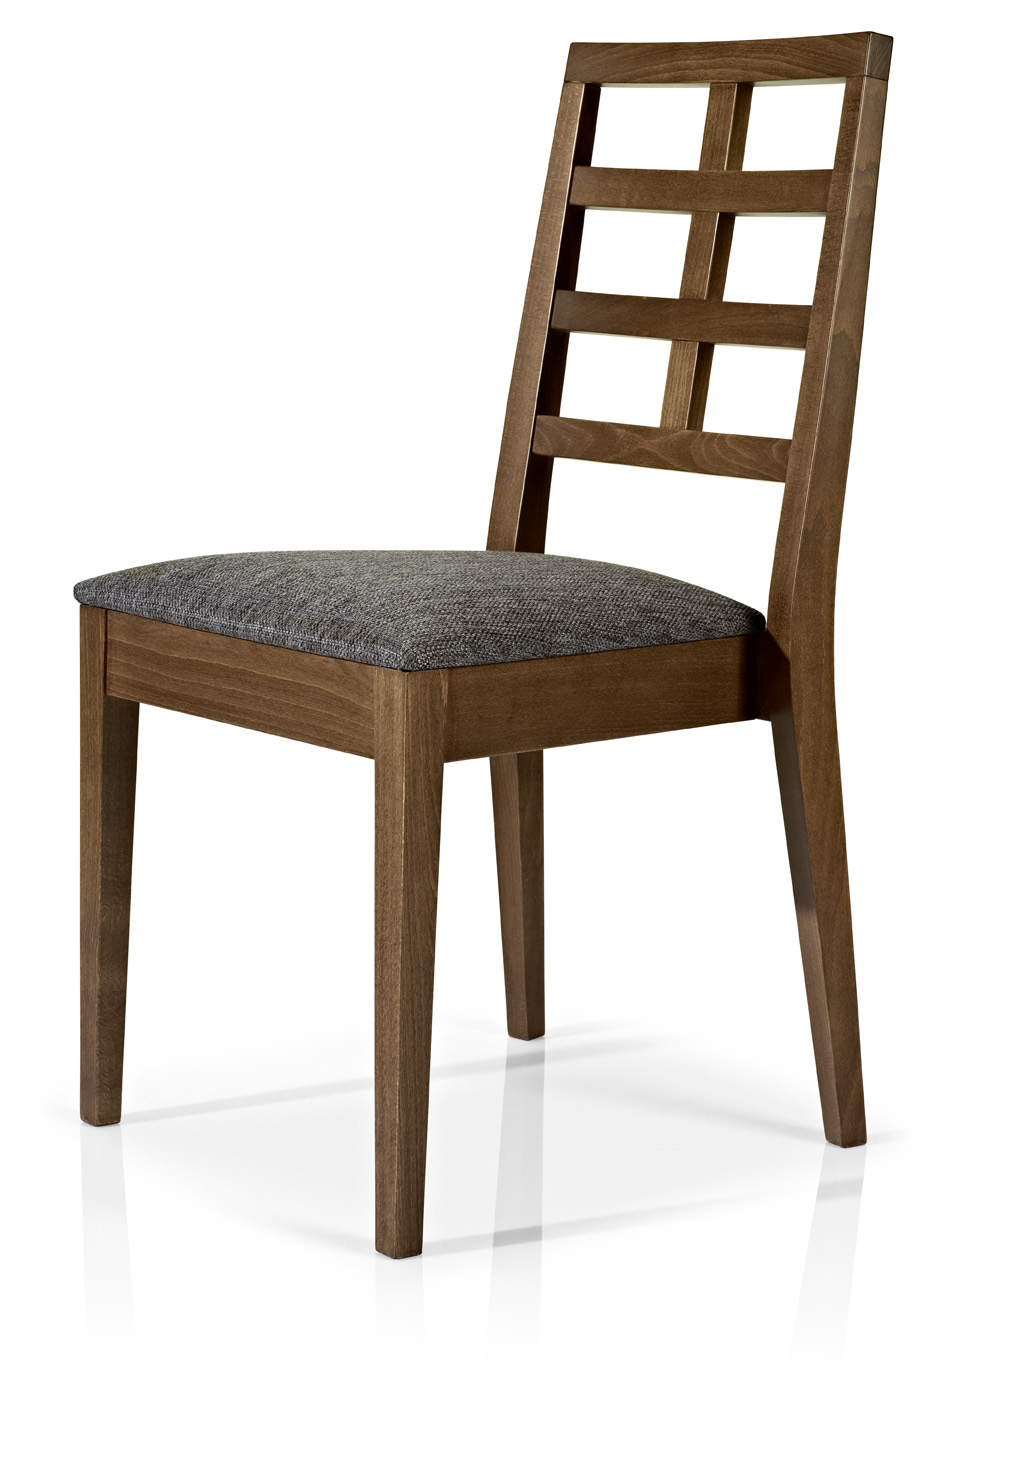  Cadeira hotelaria profissional com estrutura de 4 pés madeira com velatura em várias tonalidades, disponível com estofo em várias categorias e cores de semi-pele e tecidos.